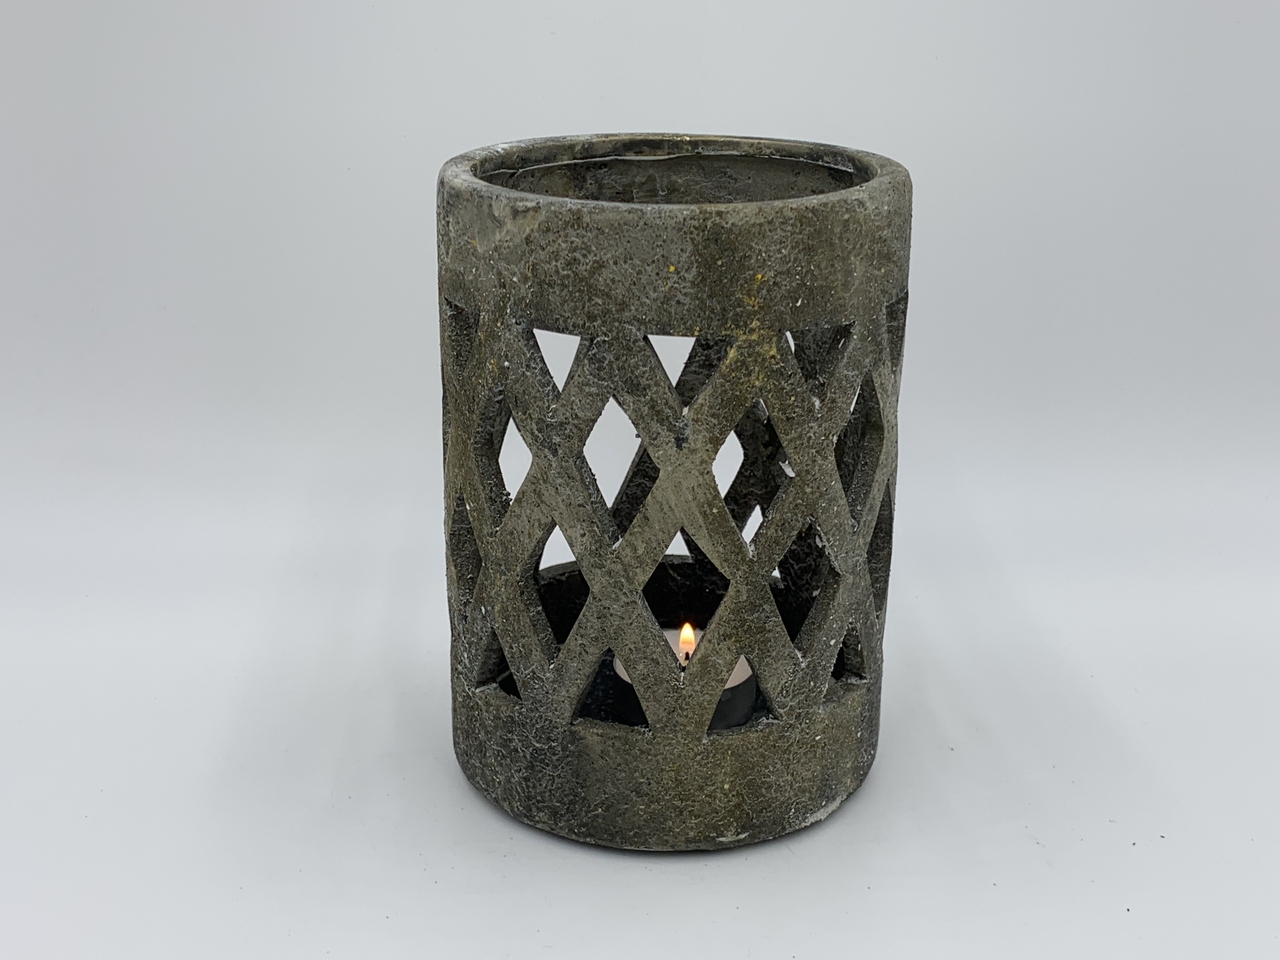 Waxinelichthouder / windlicht stonegrey grijs groen steen wiebertjes maat L 21,5x15 cm| 65539 | Home Sweet Home | Stoer & S